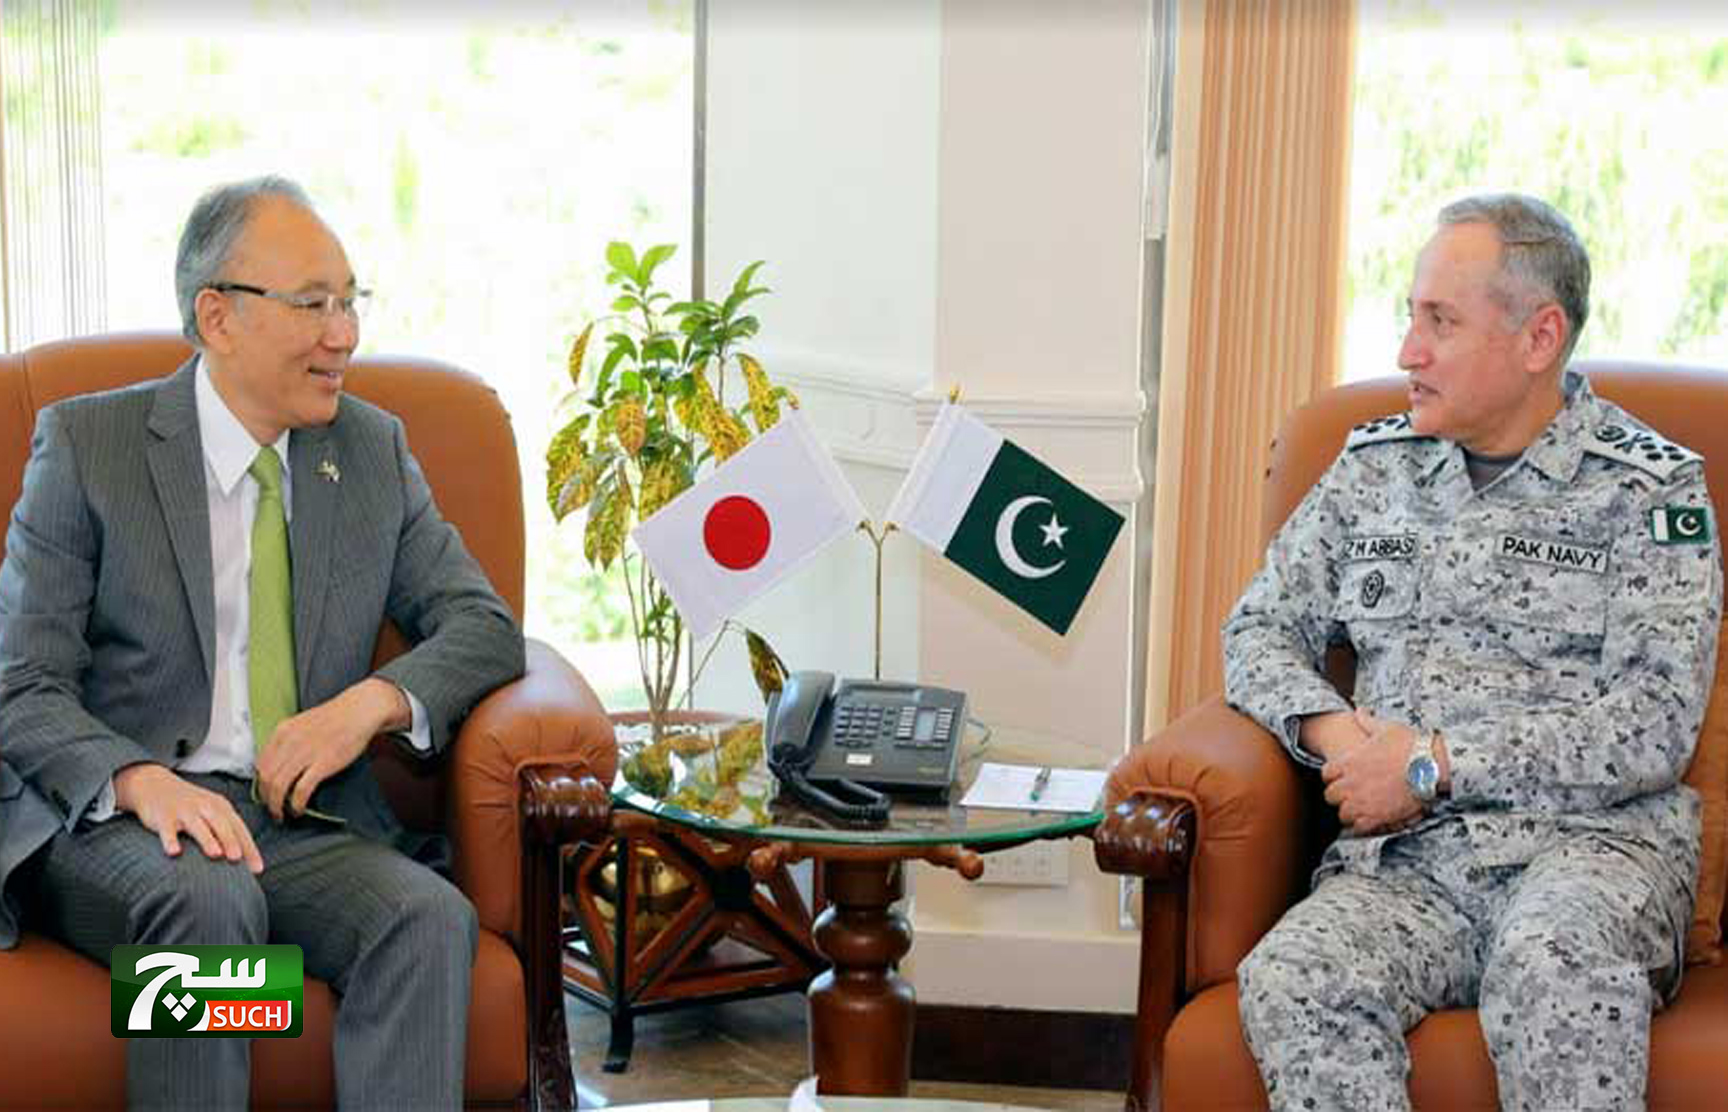 السفير الياباني الجديد لدى باكستان يلتقي قائد القوات البحرية الباكستانية